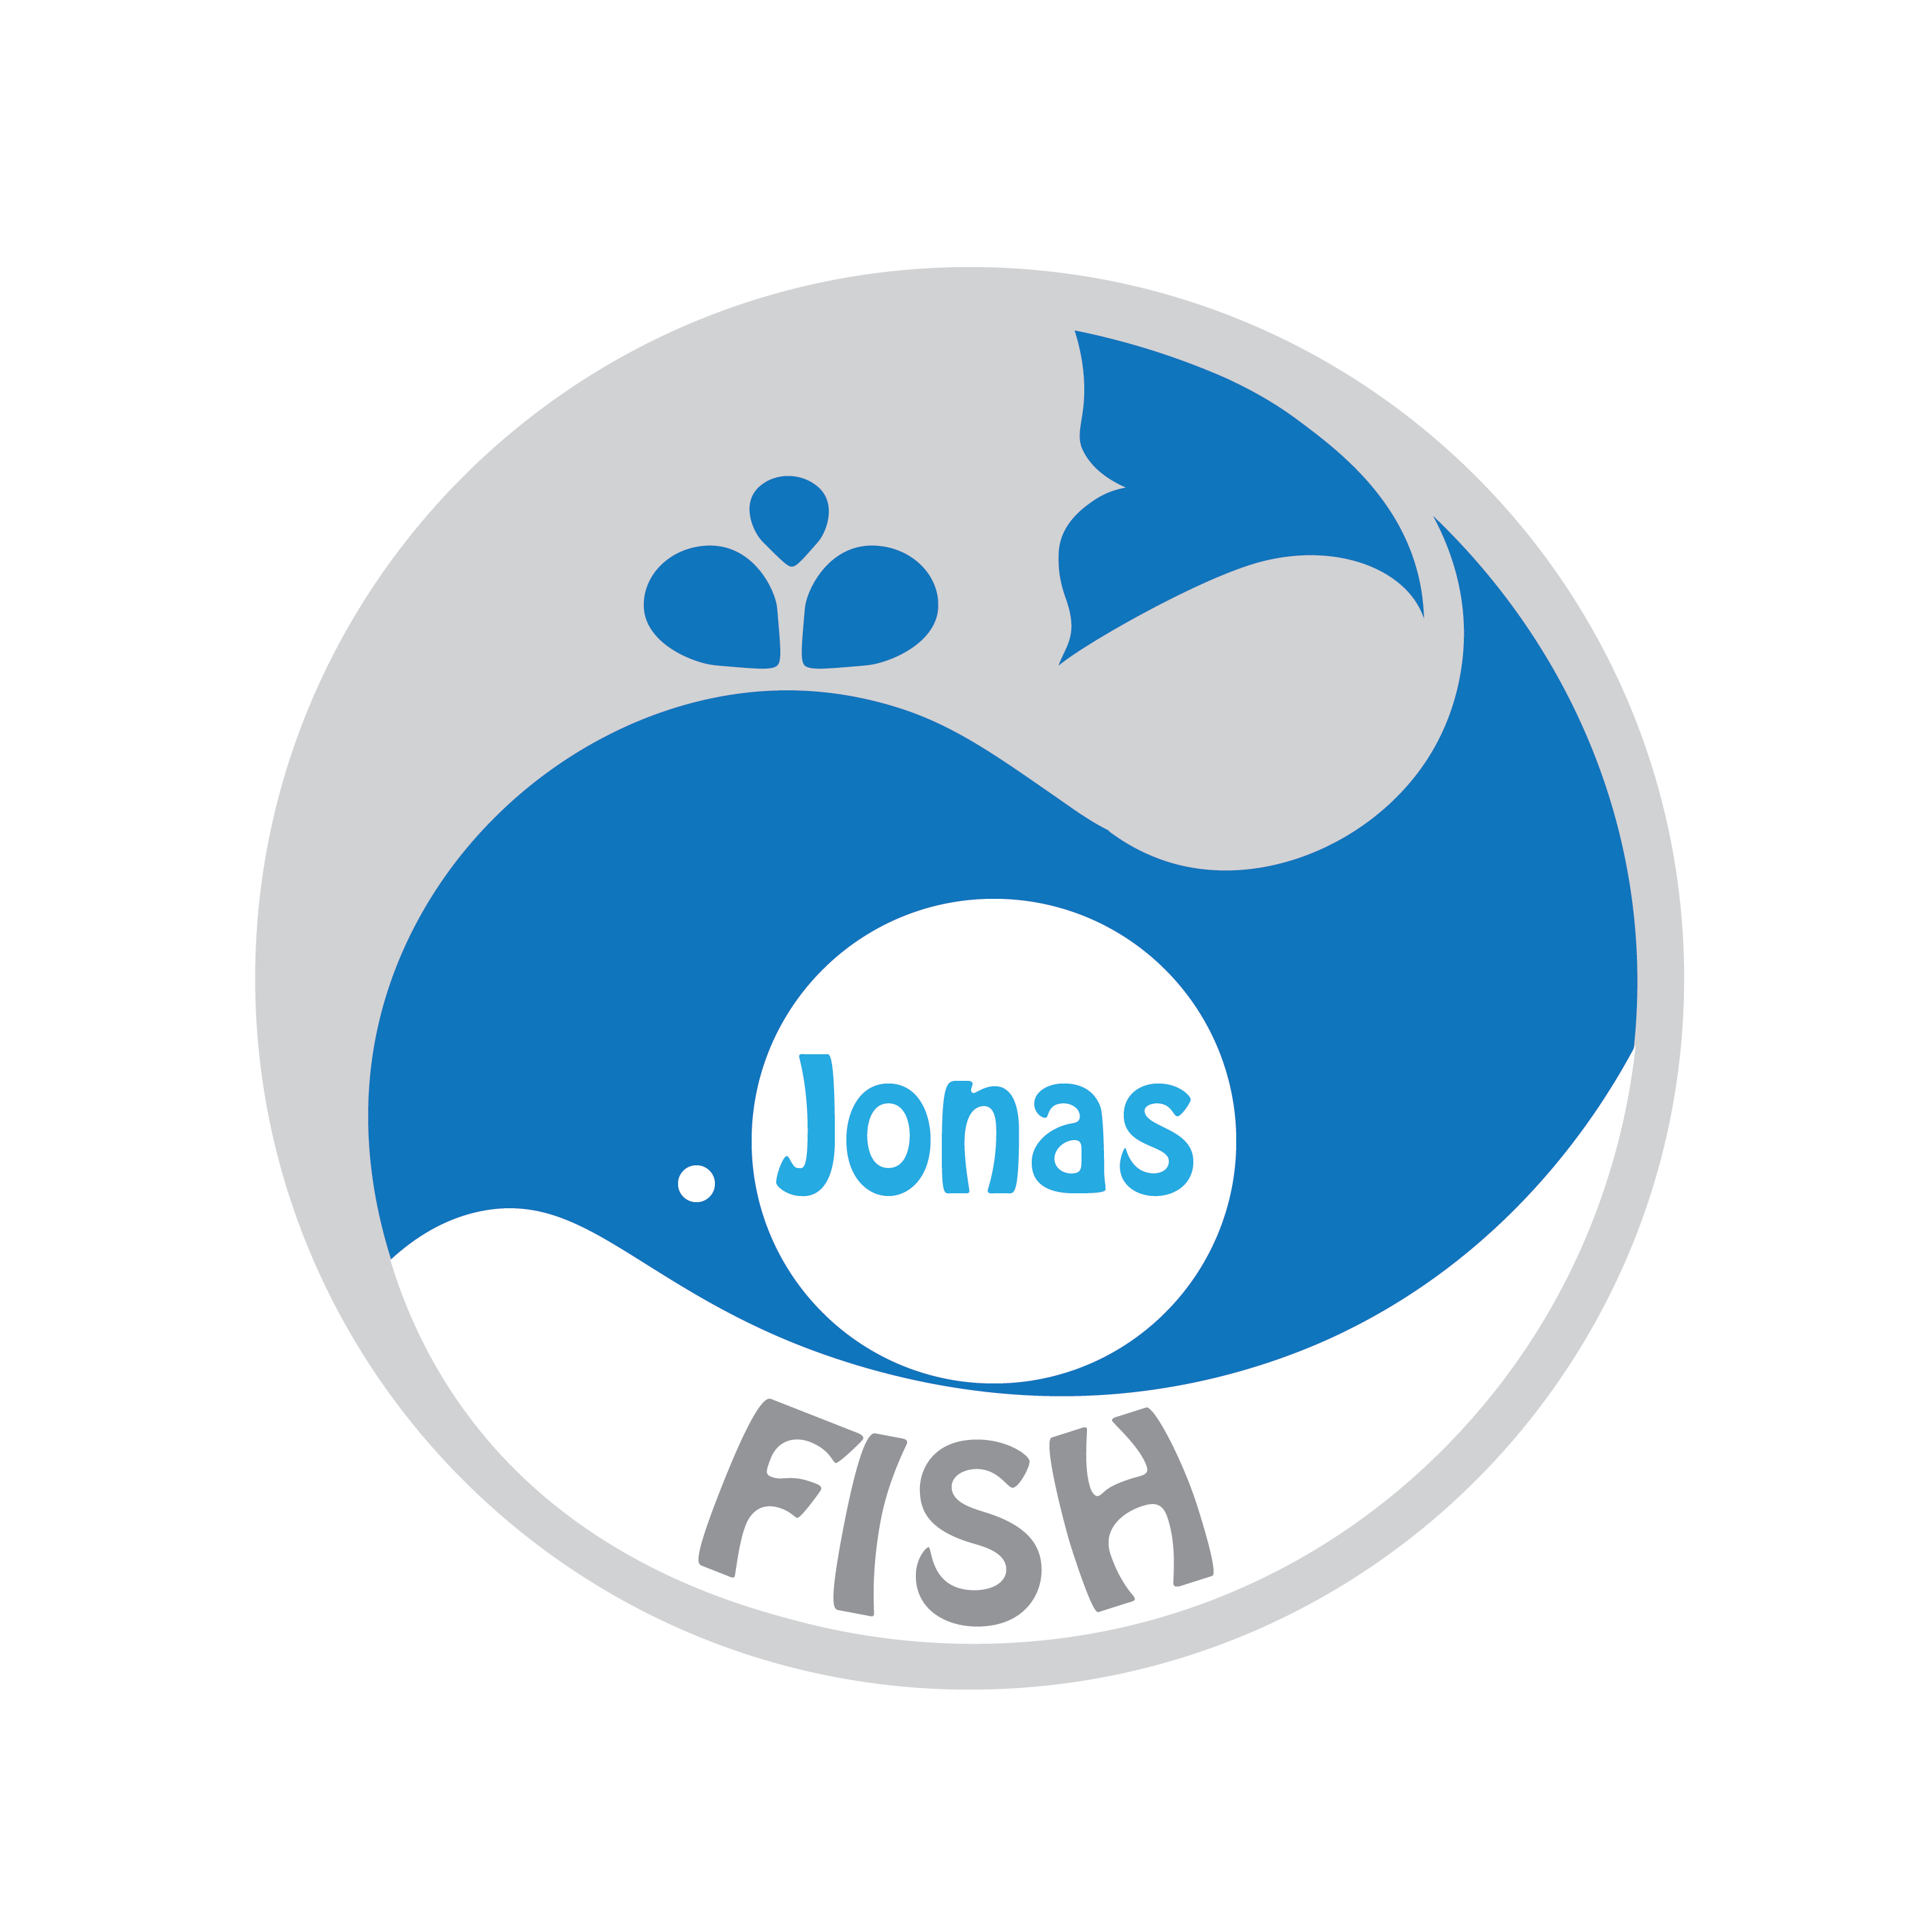 Jonas Fish